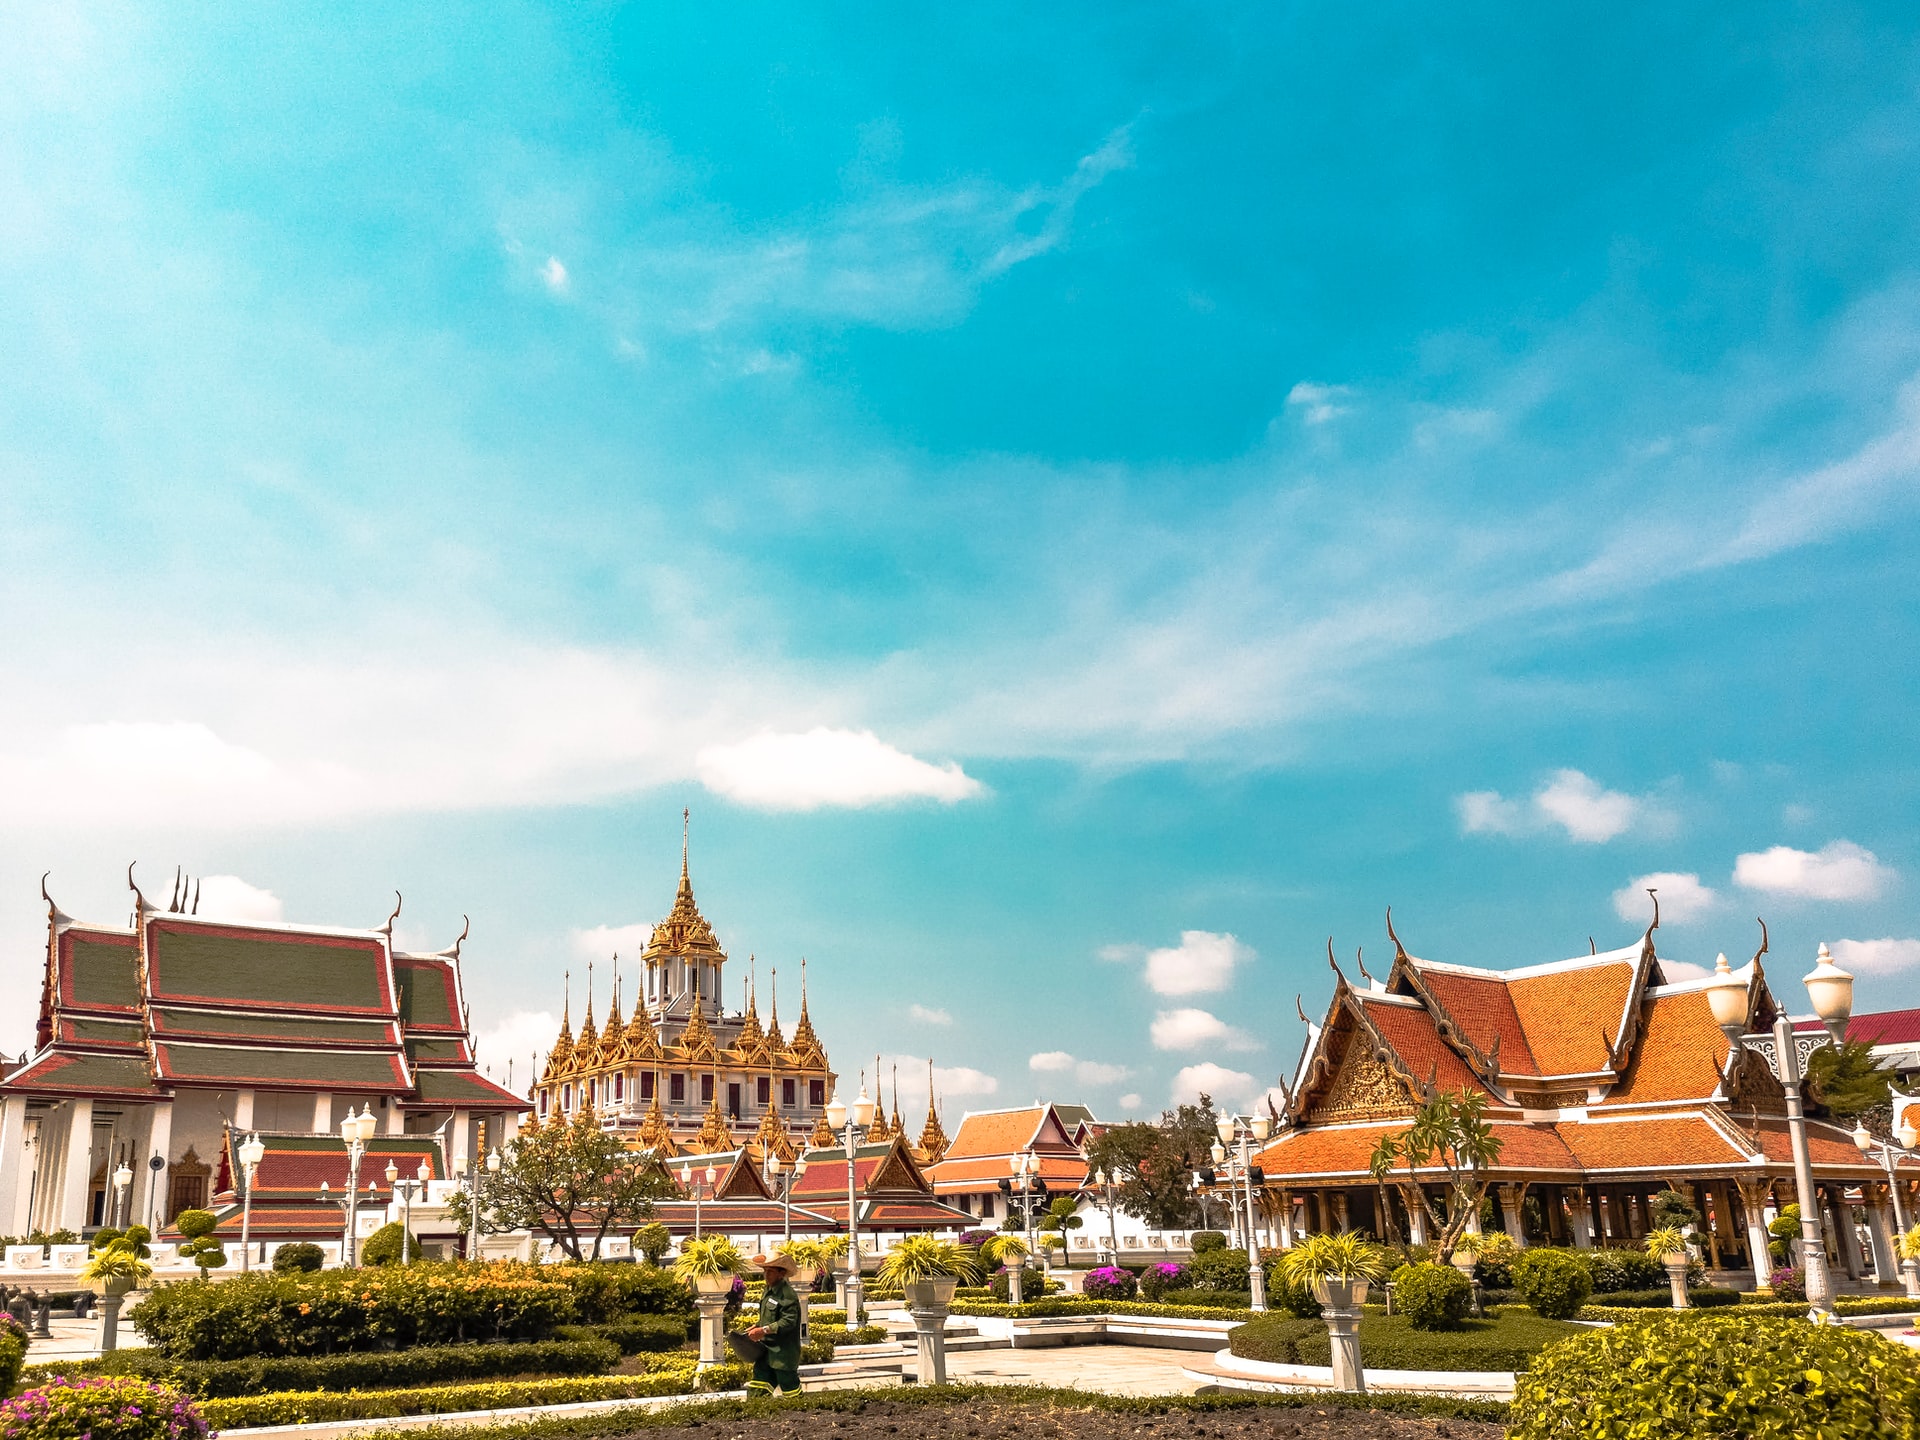 タイ、10月から4段階で観光を再開へ。バンコクやチェンマイは11月予定